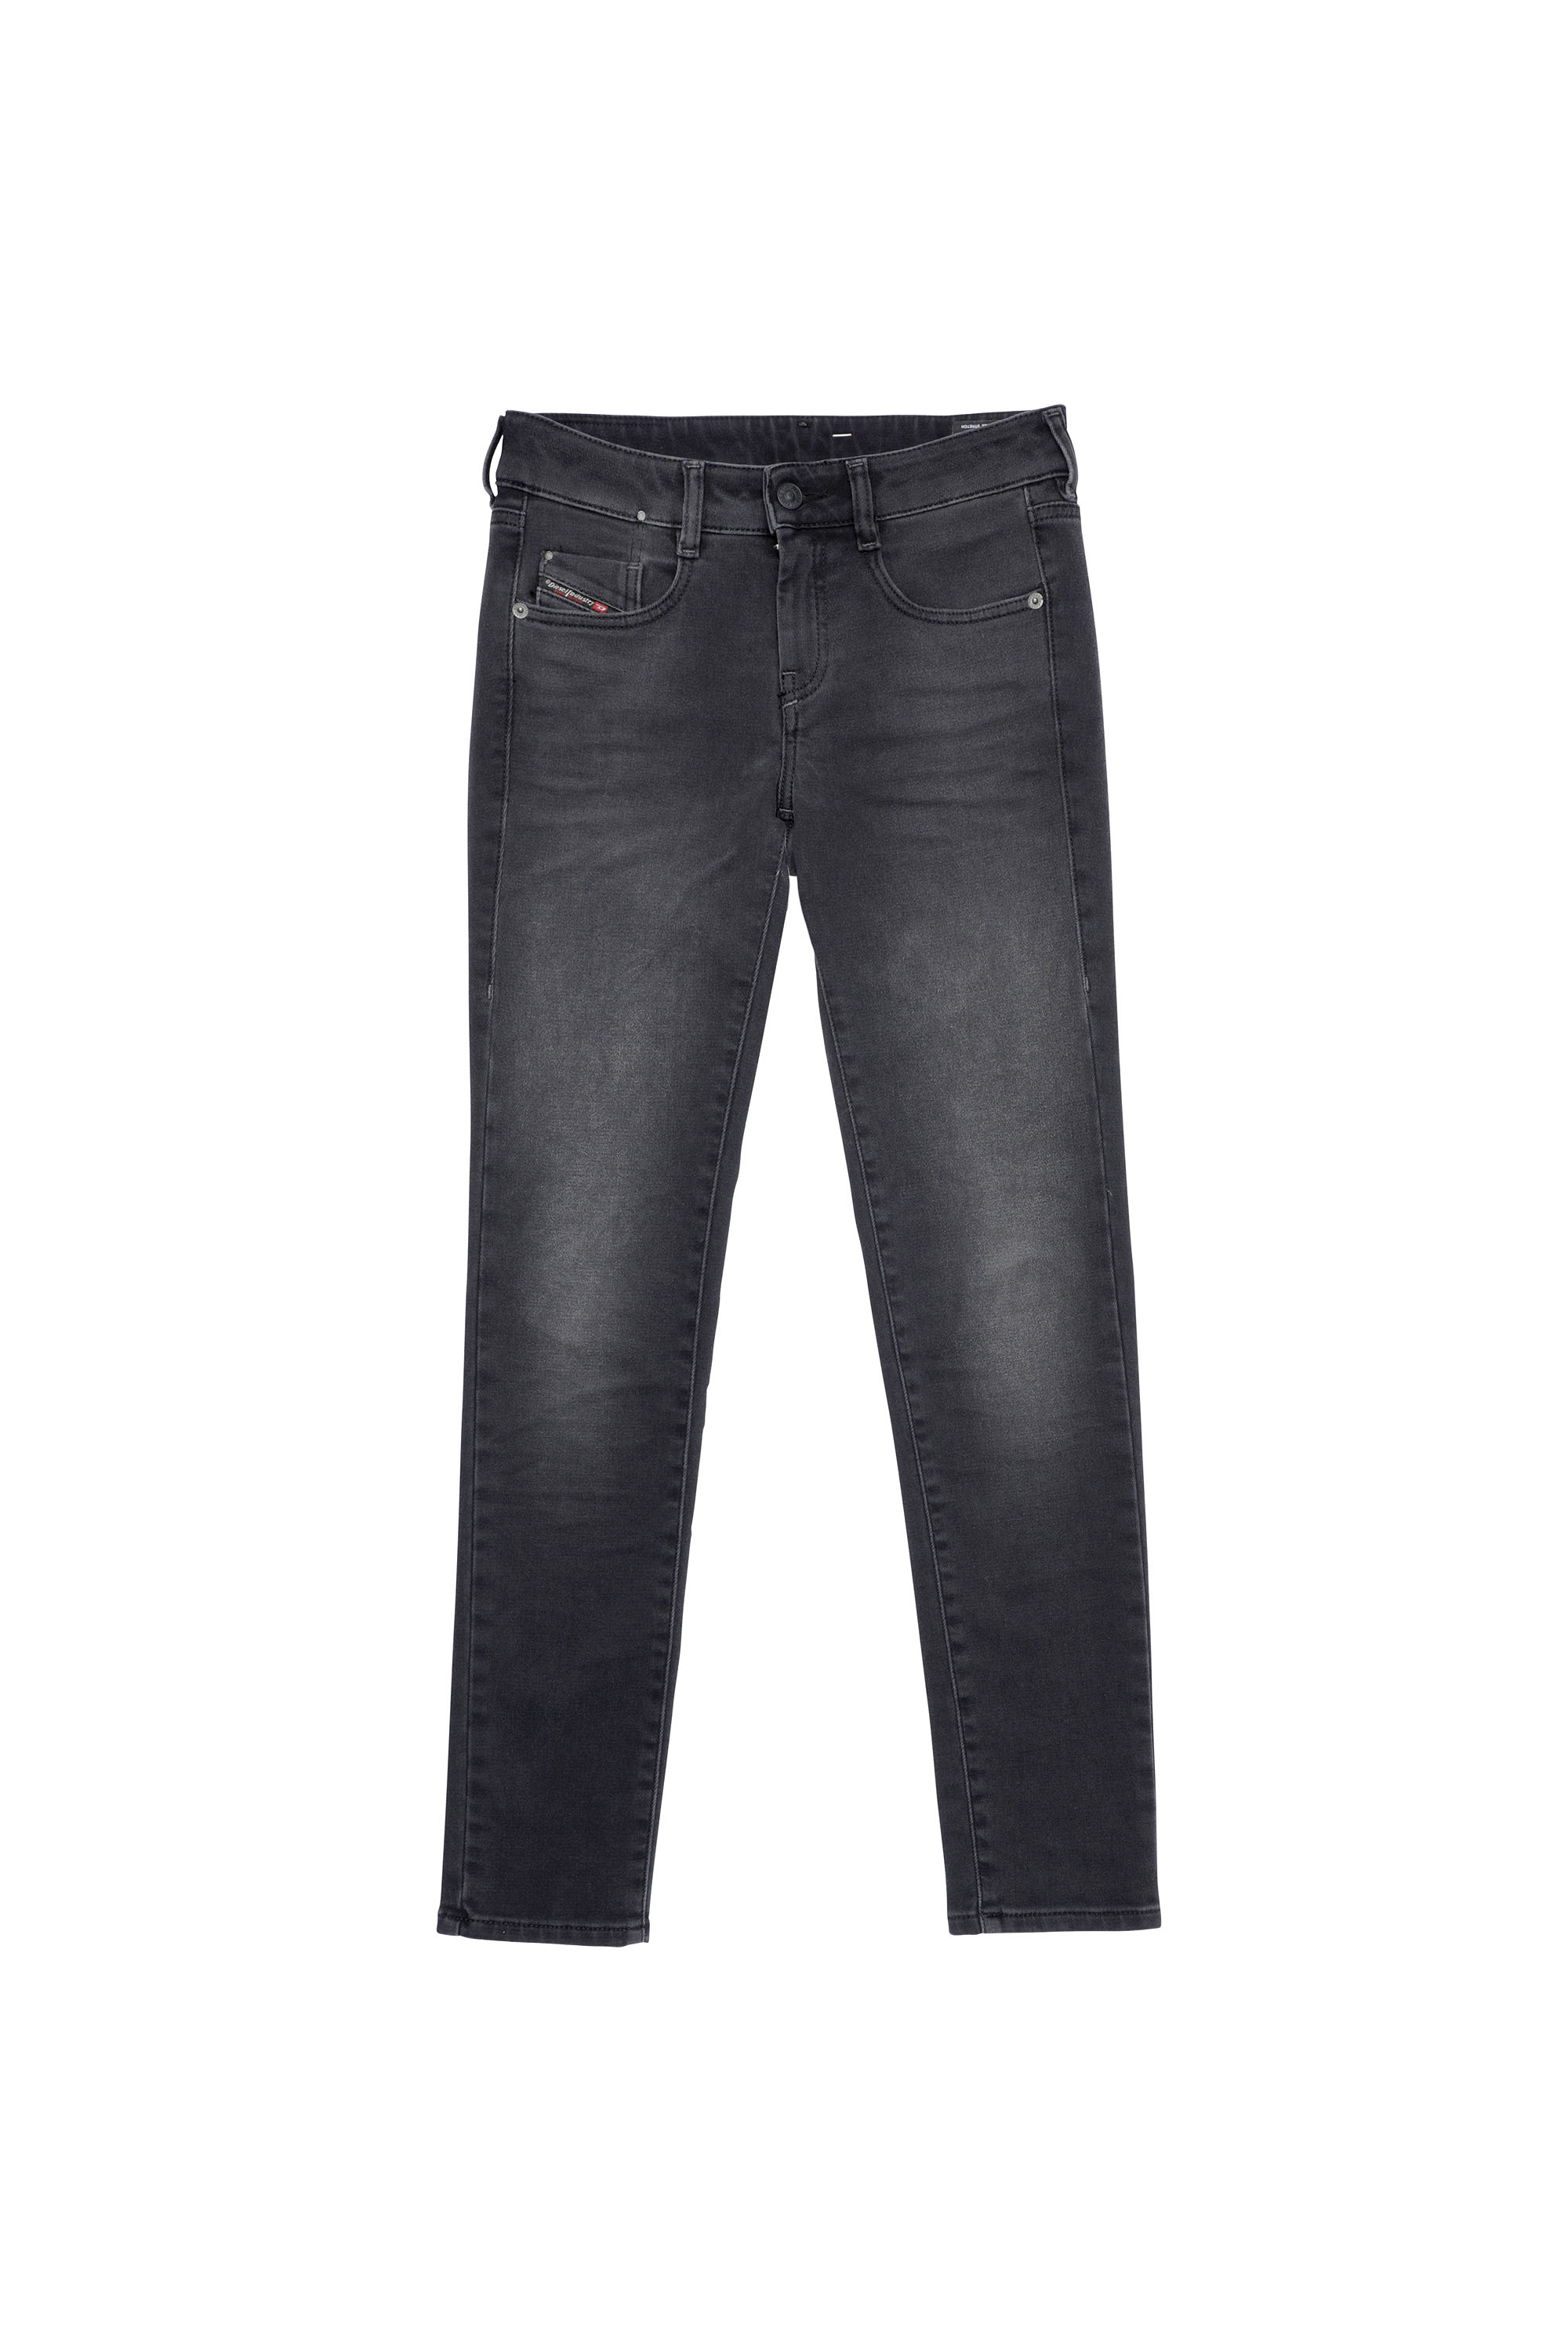 Diesel - D-Ollies Slim JoggJeans® 09B22, Black/Dark grey - Image 7